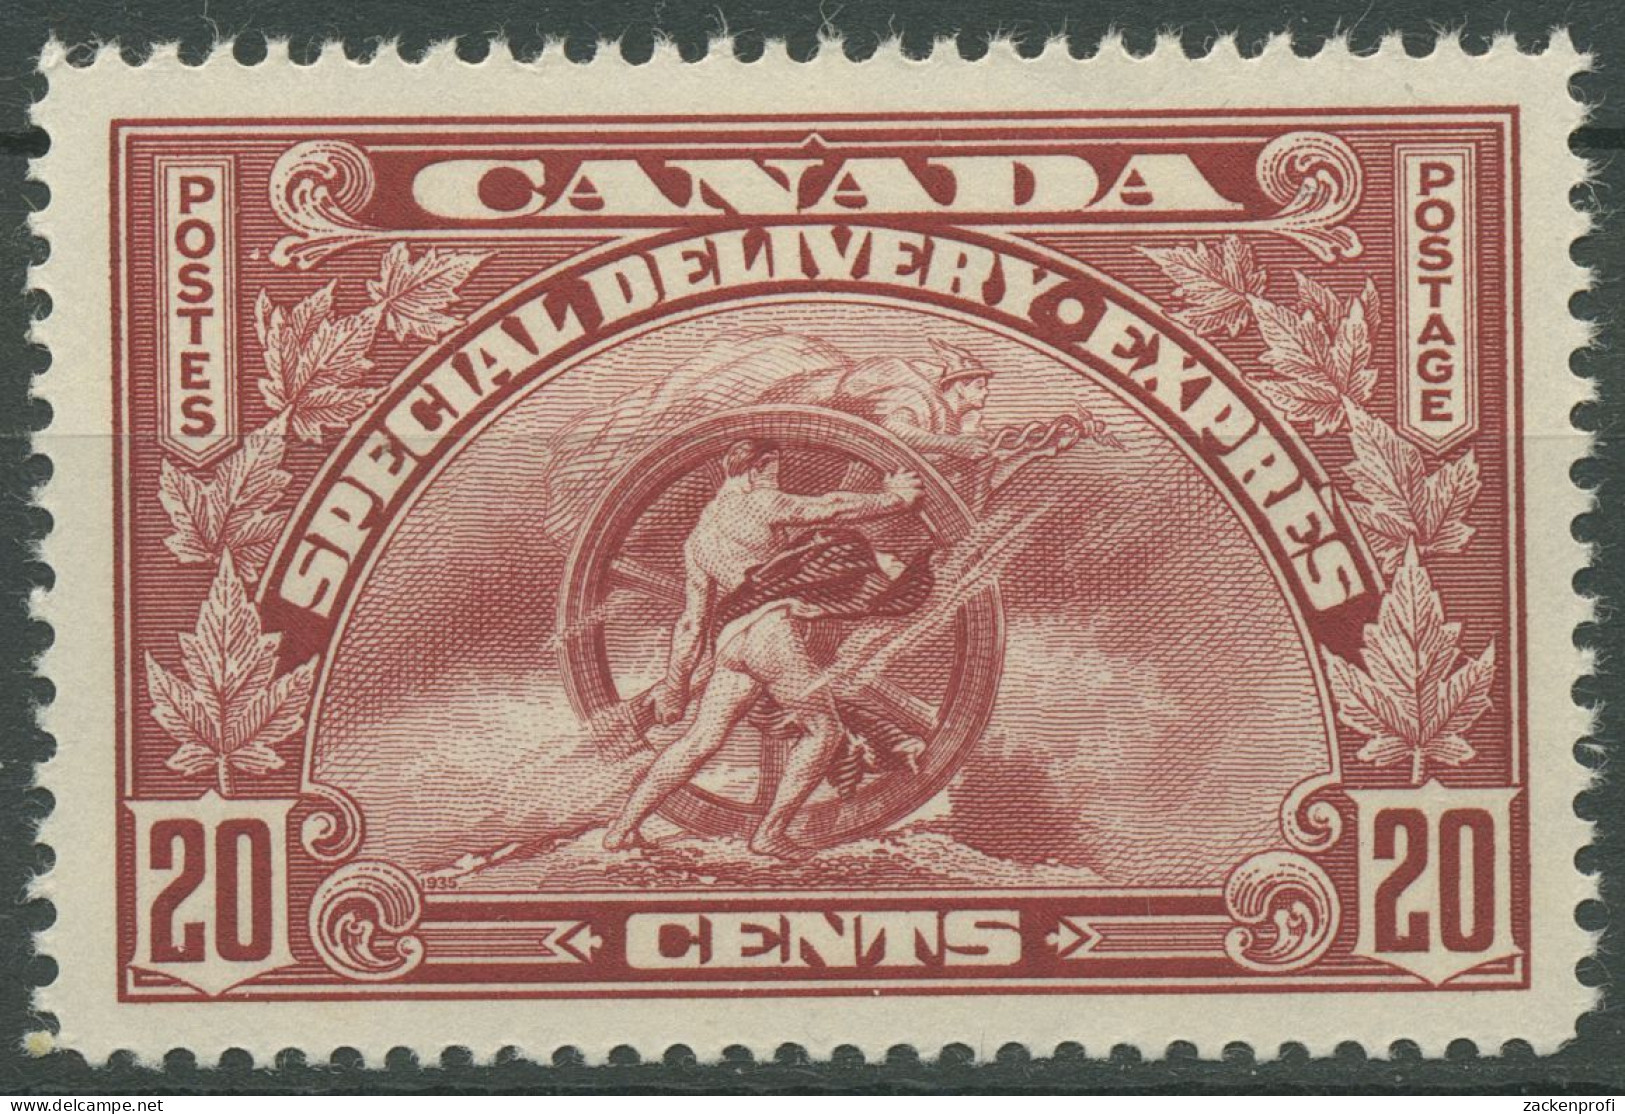 Kanada 1935 Eilmarke Sinnbild Des Fortschritts 195 Mit Falz - Special Delivery